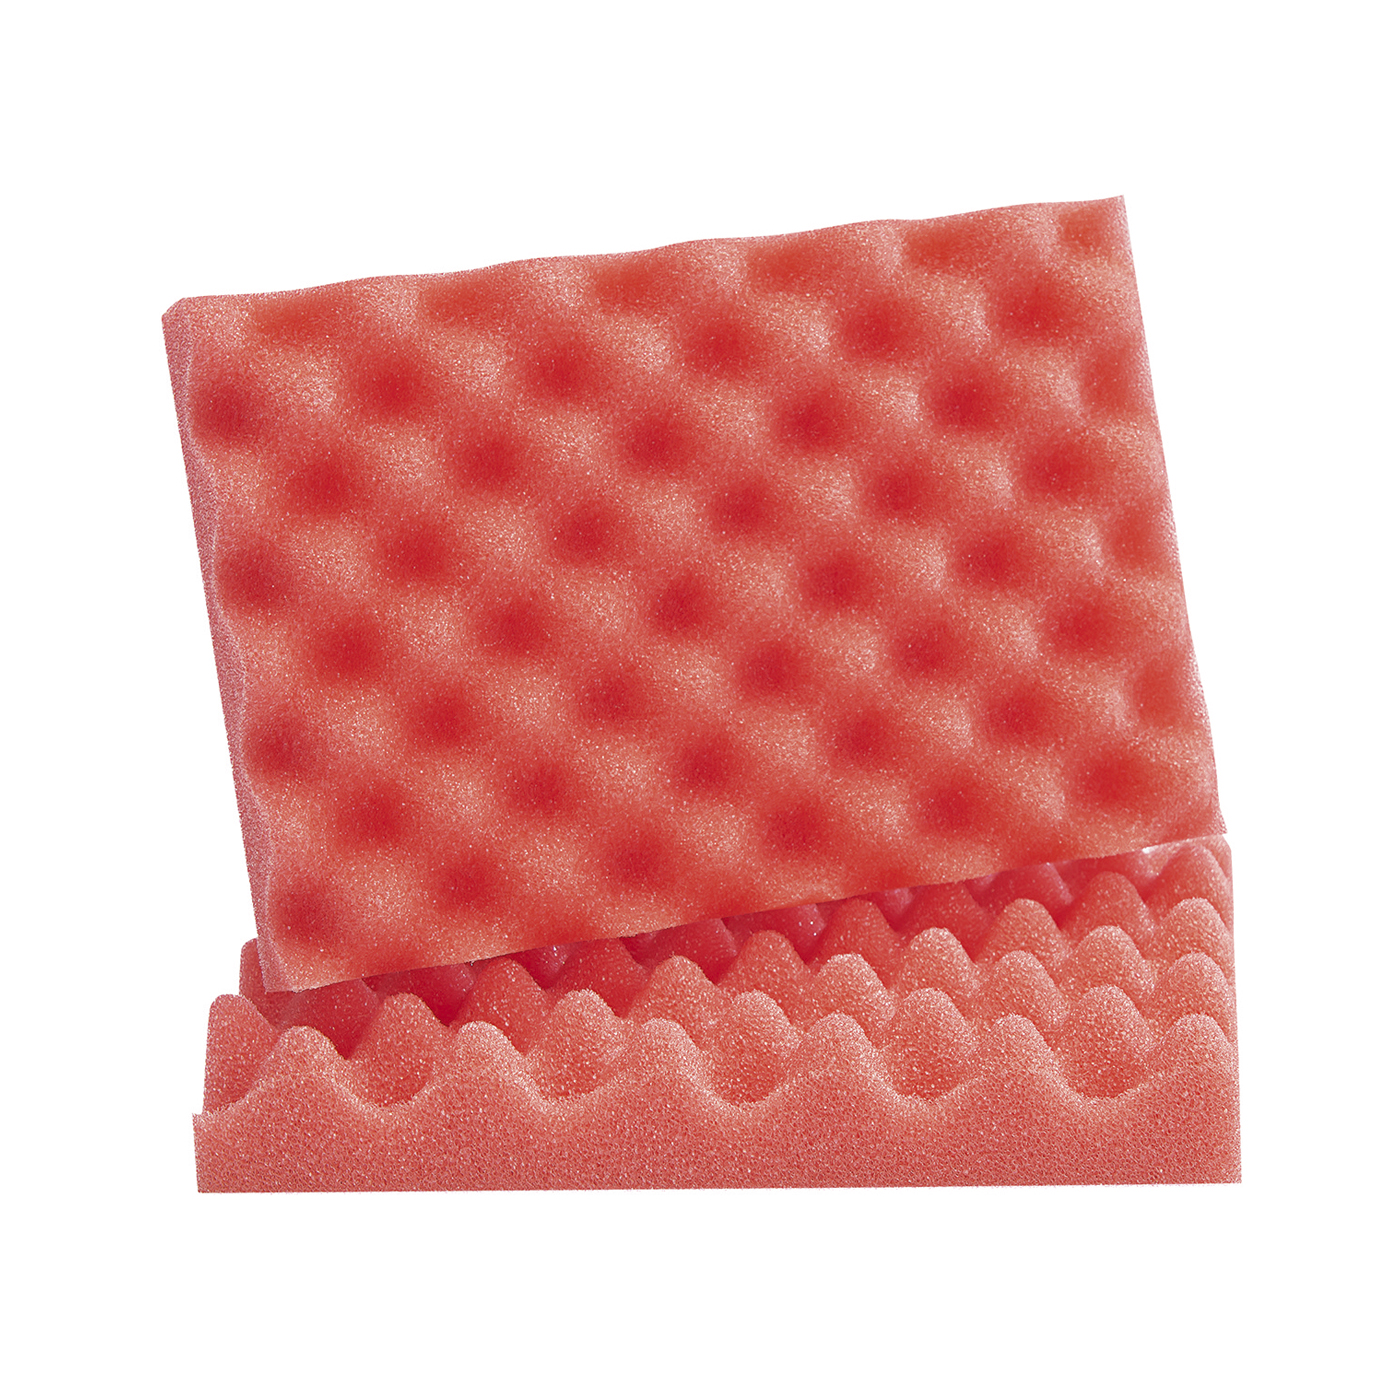 FINO Profiled Foam, for 1.3 l, Red - 2 pieces